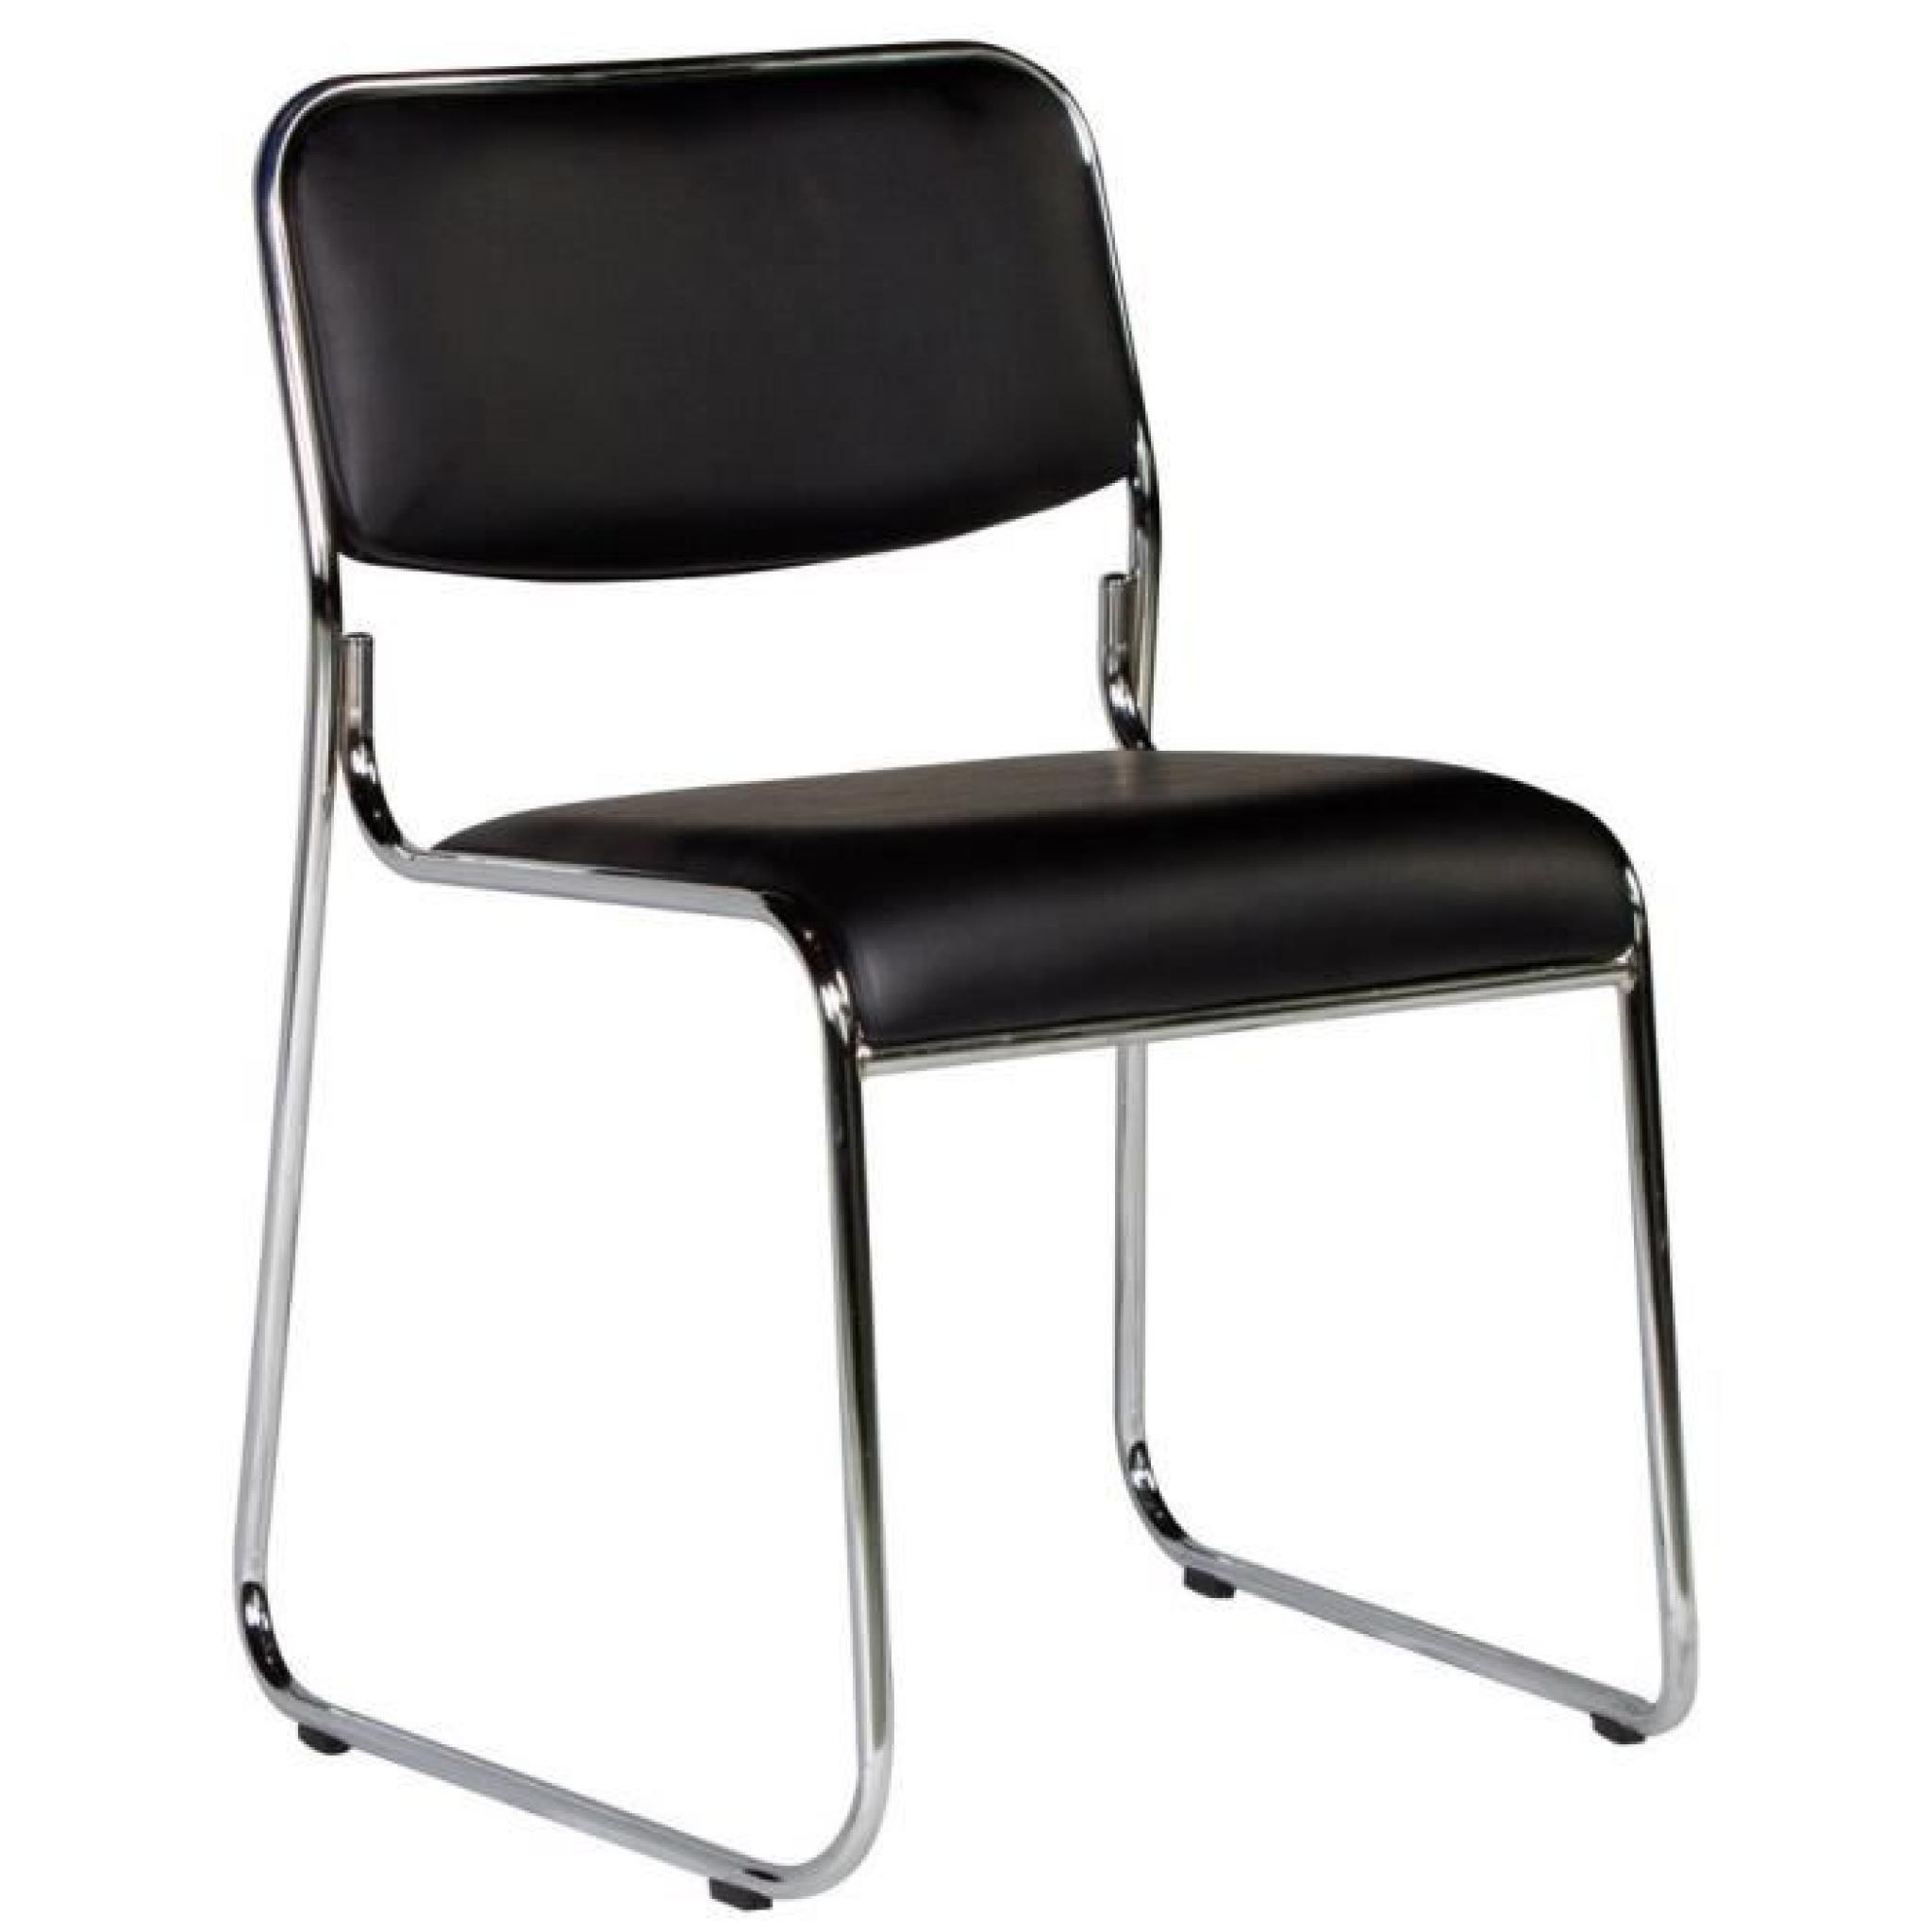 Chaise sans accoudoirs coloris noir moderne